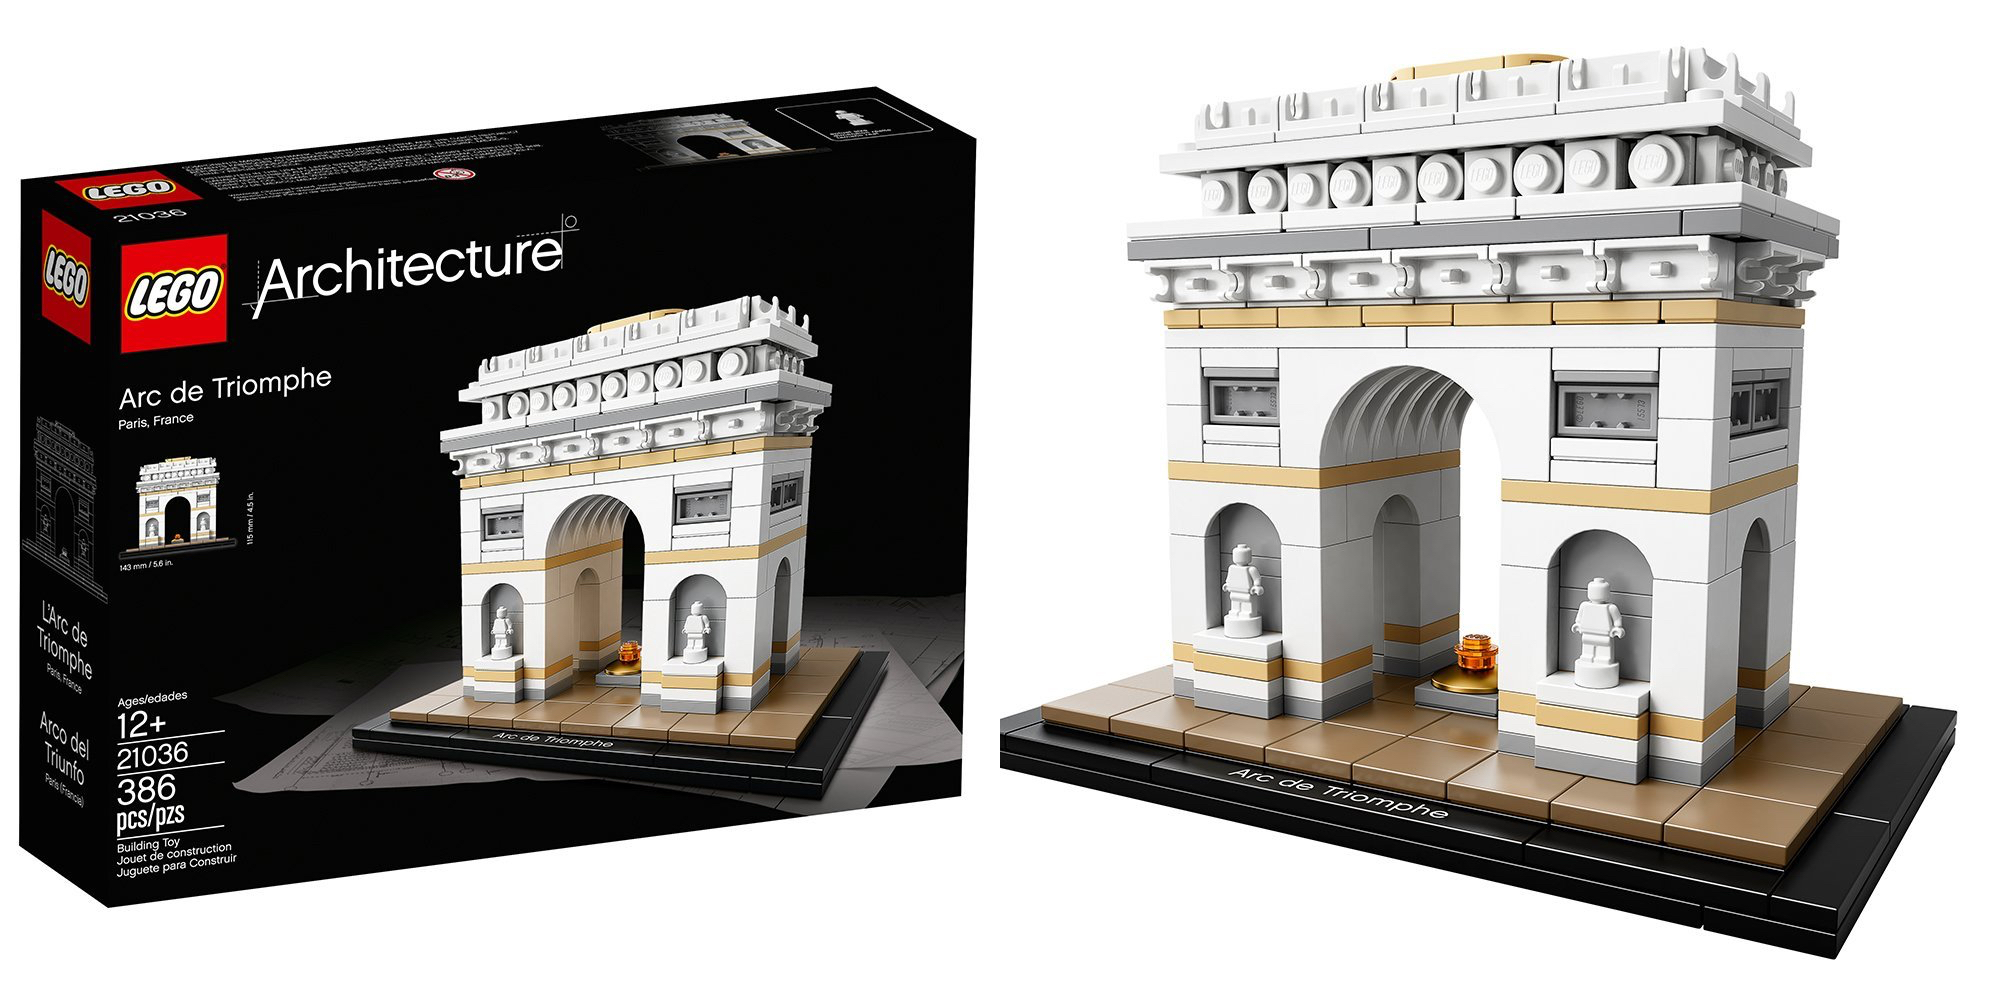 21036 LEGO Architecture Arc De Triomphe Building Kit 386 Pieces for sale online 